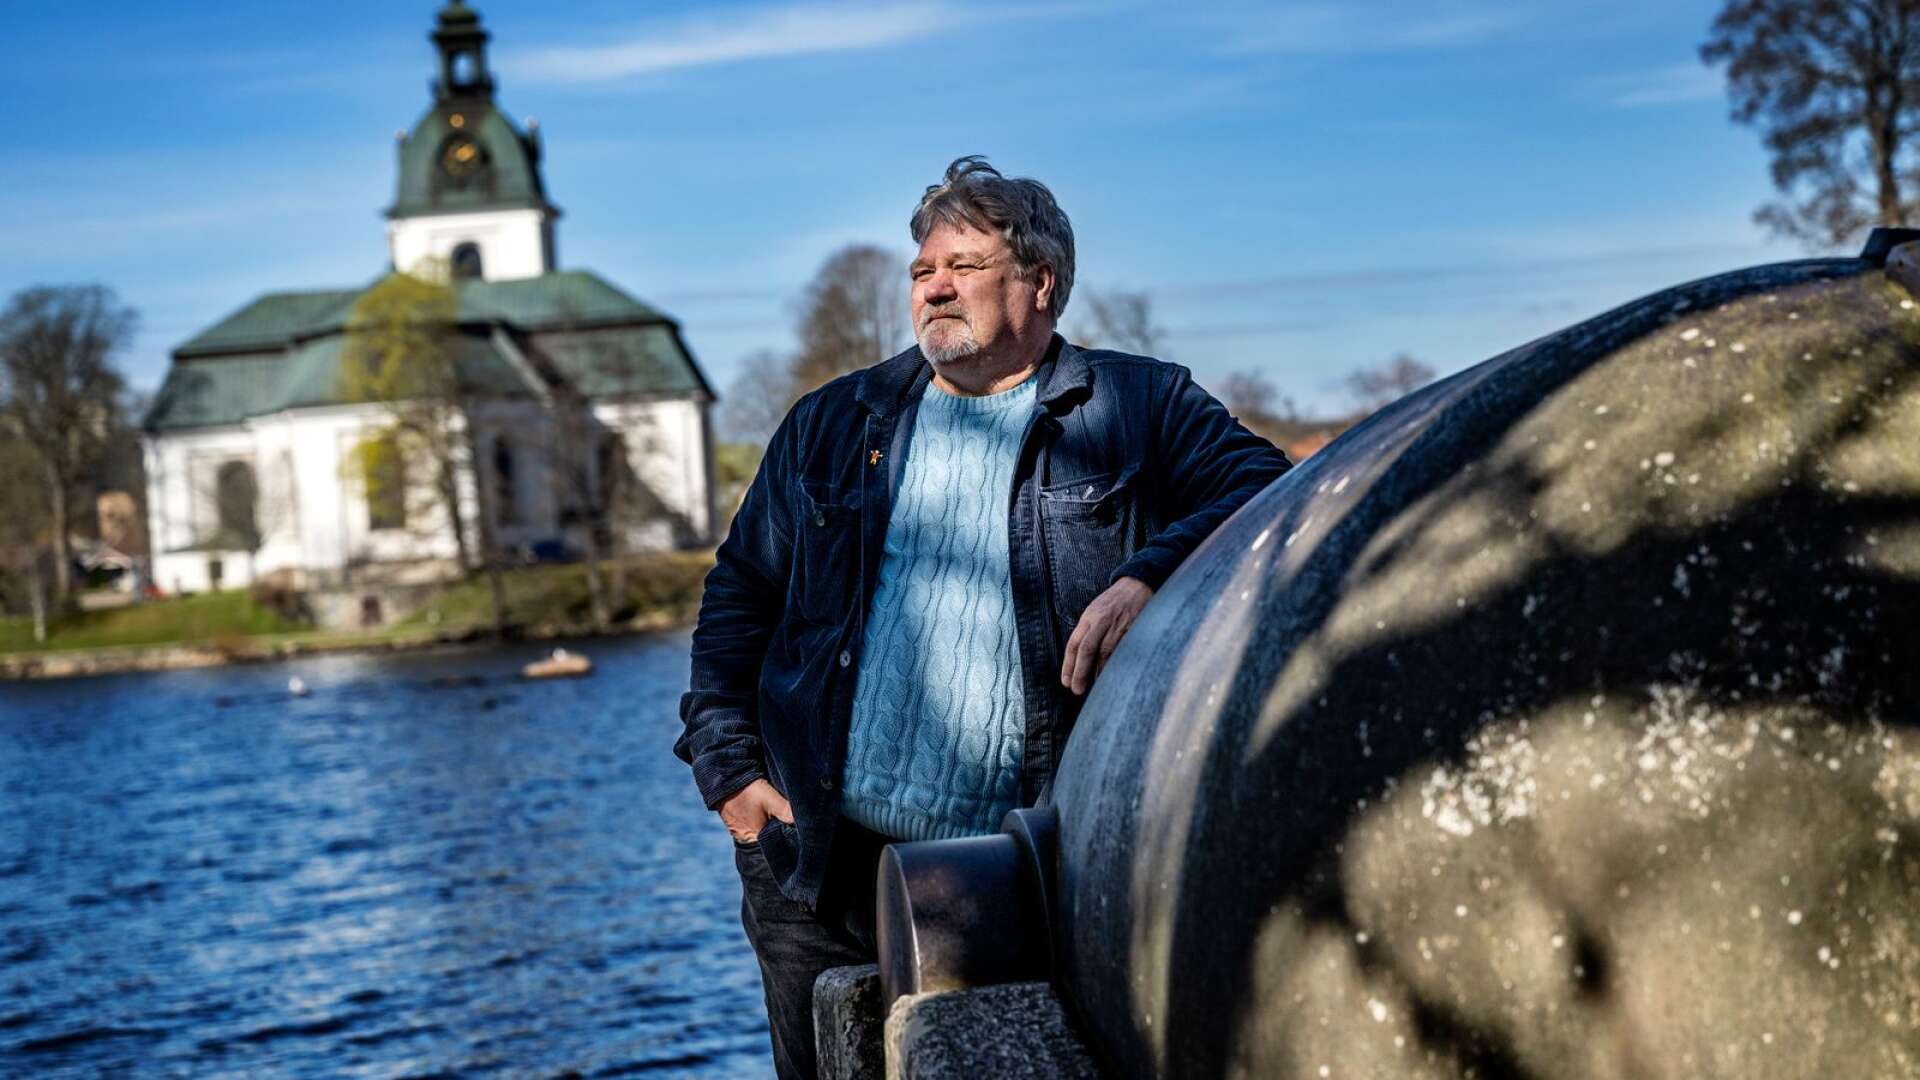 Anders Nilsson är förvånad över att han fortfarande står som ordförande för folkhälsorådet i Filipstads kommun, enligt informationen på kommunens hemsida.